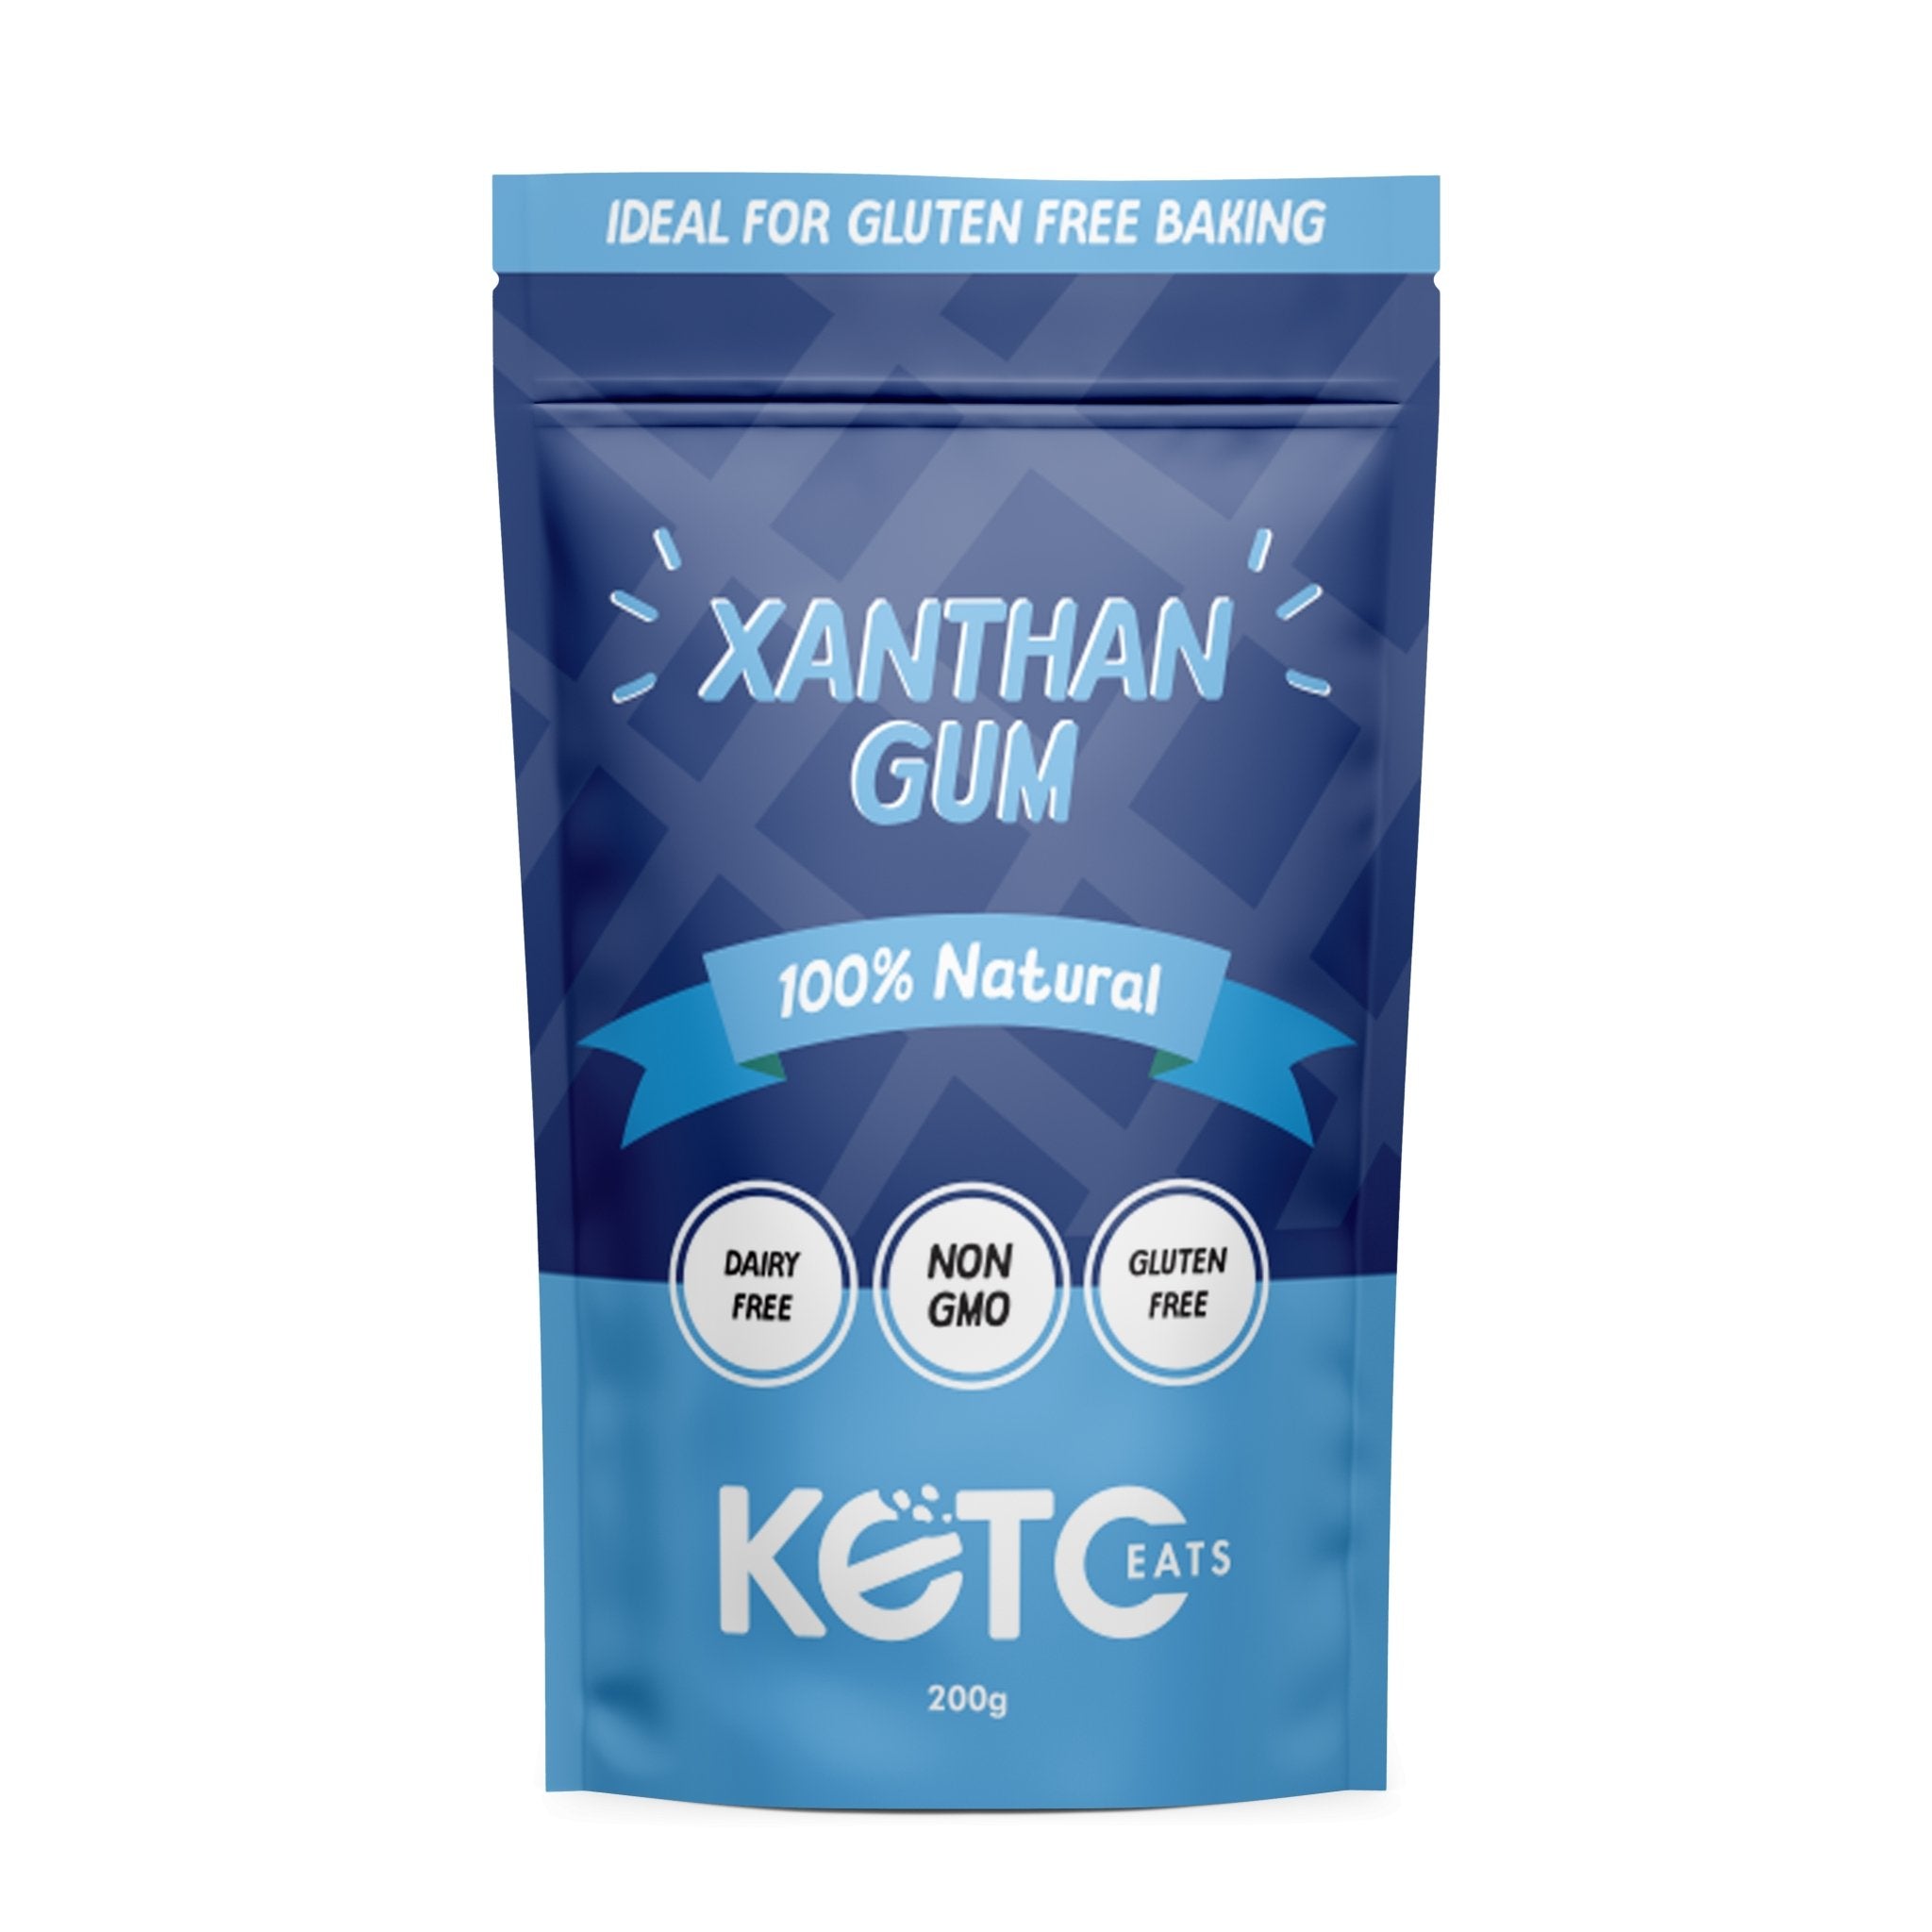 Xanthan Gum Best Before - 21 Jul 24 - Yo Keto